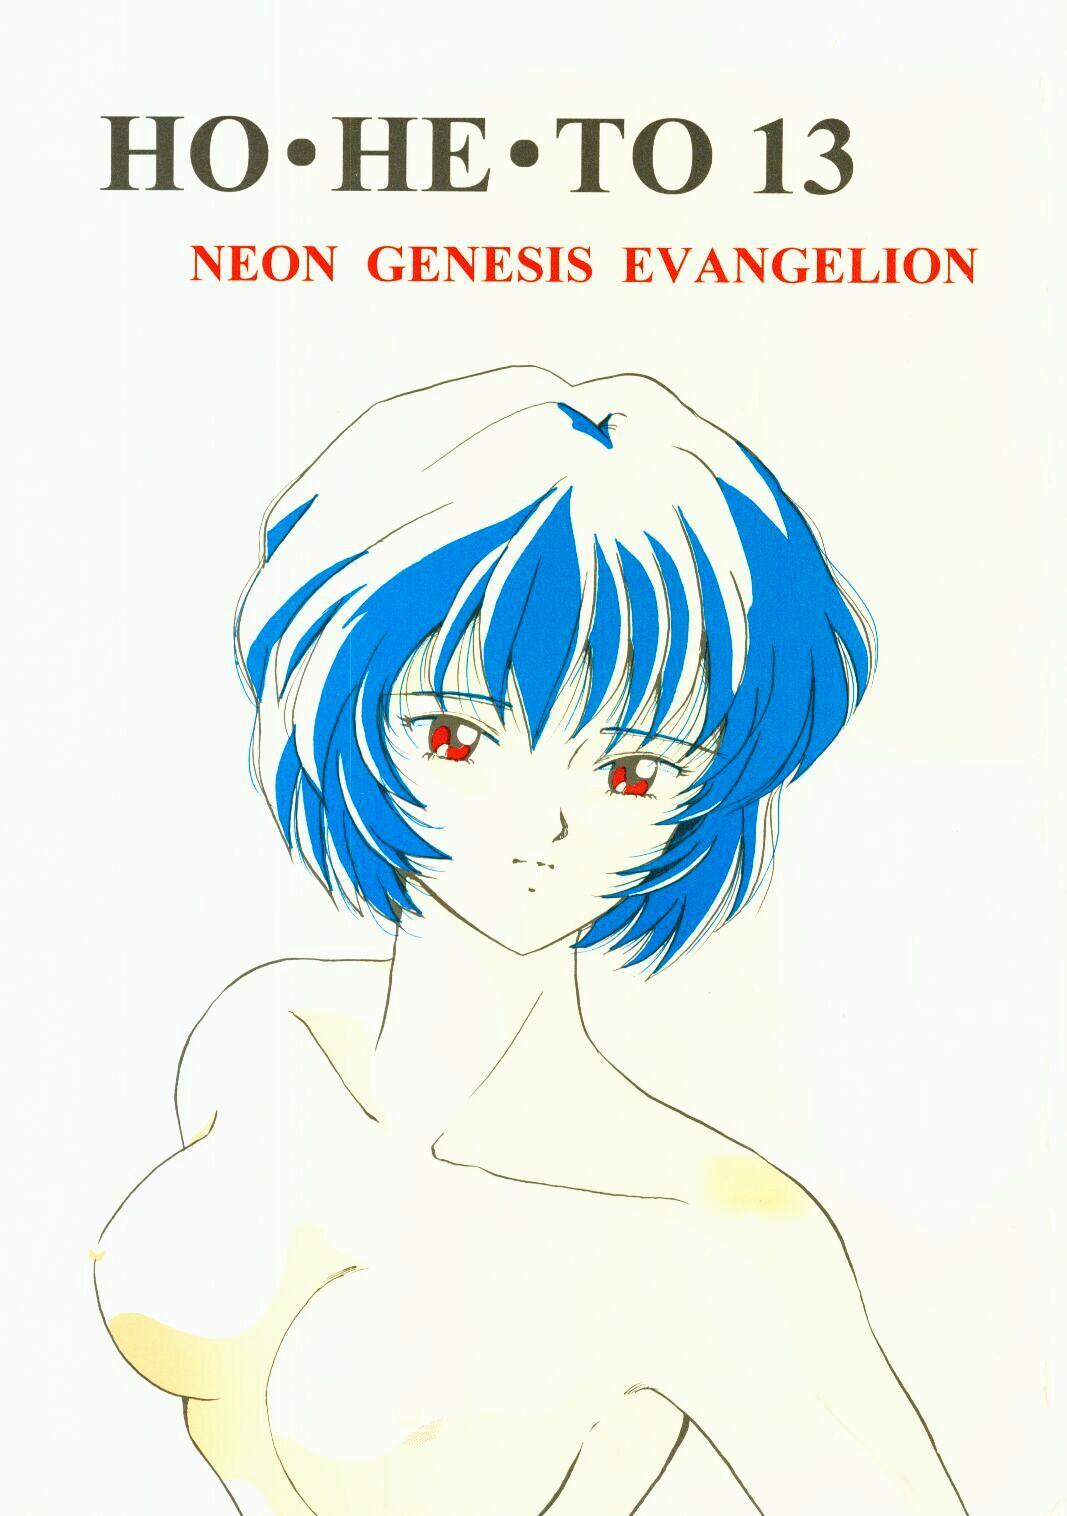 Nalgas (C50) [Studio Boxer (Shima Takashi, Taka) HOHETO 13 (Neon Genesis Evangelion) - Neon genesis evangelion Dildos - Page 1